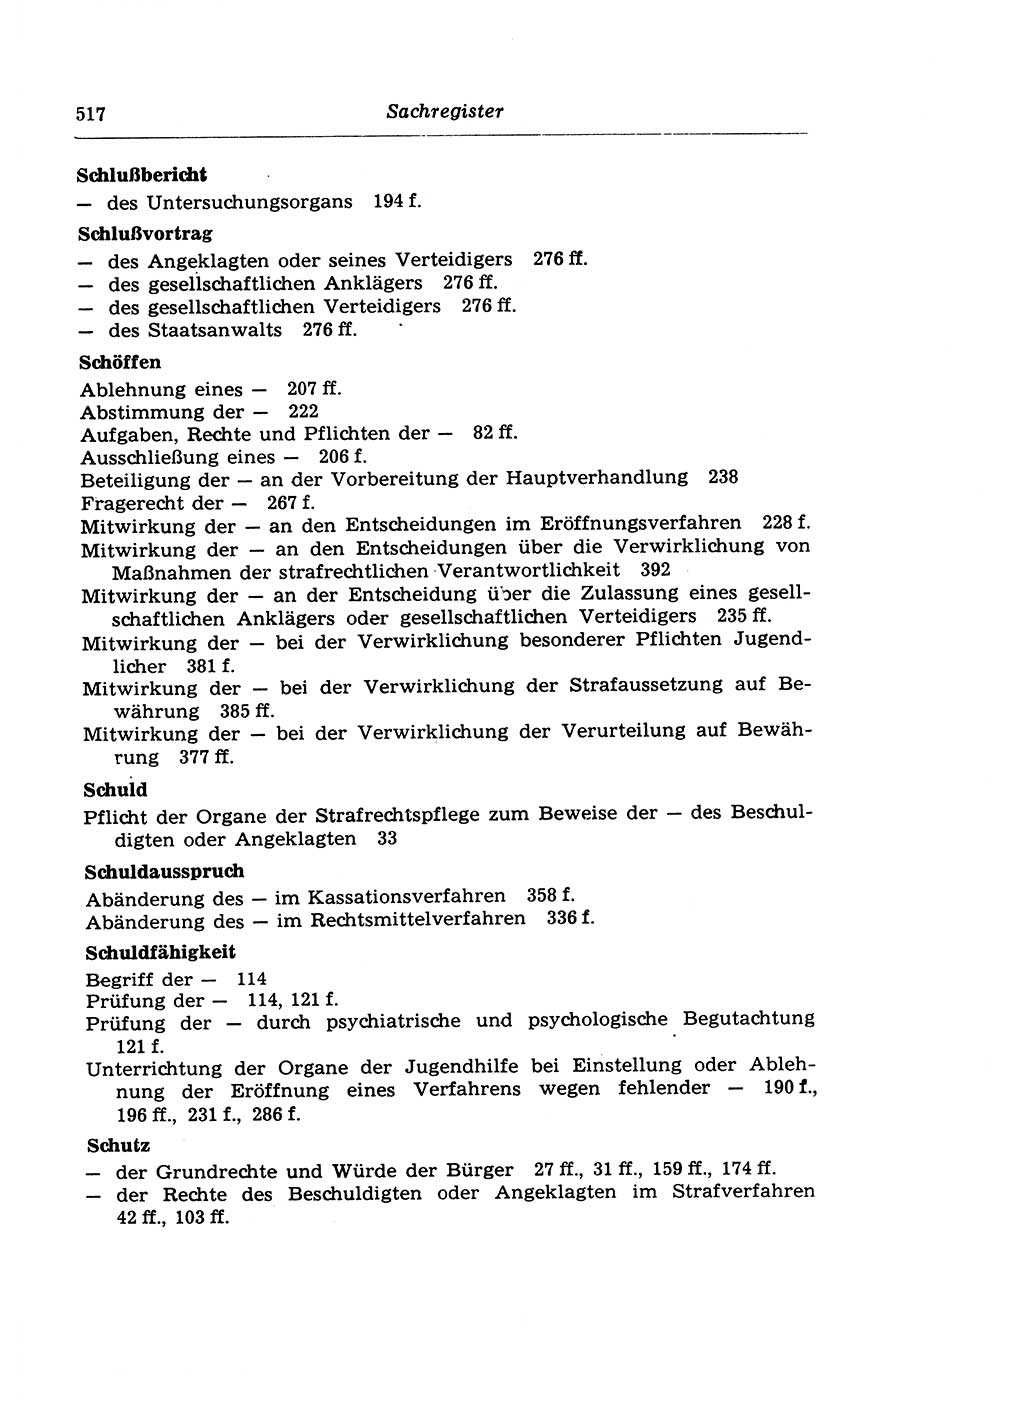 Strafprozeßrecht der DDR (Deutsche Demokratische Republik), Lehrkommentar zur Strafprozeßordnung (StPO) 1968, Seite 517 (Strafprozeßr. DDR Lehrkomm. StPO 19688, S. 517)